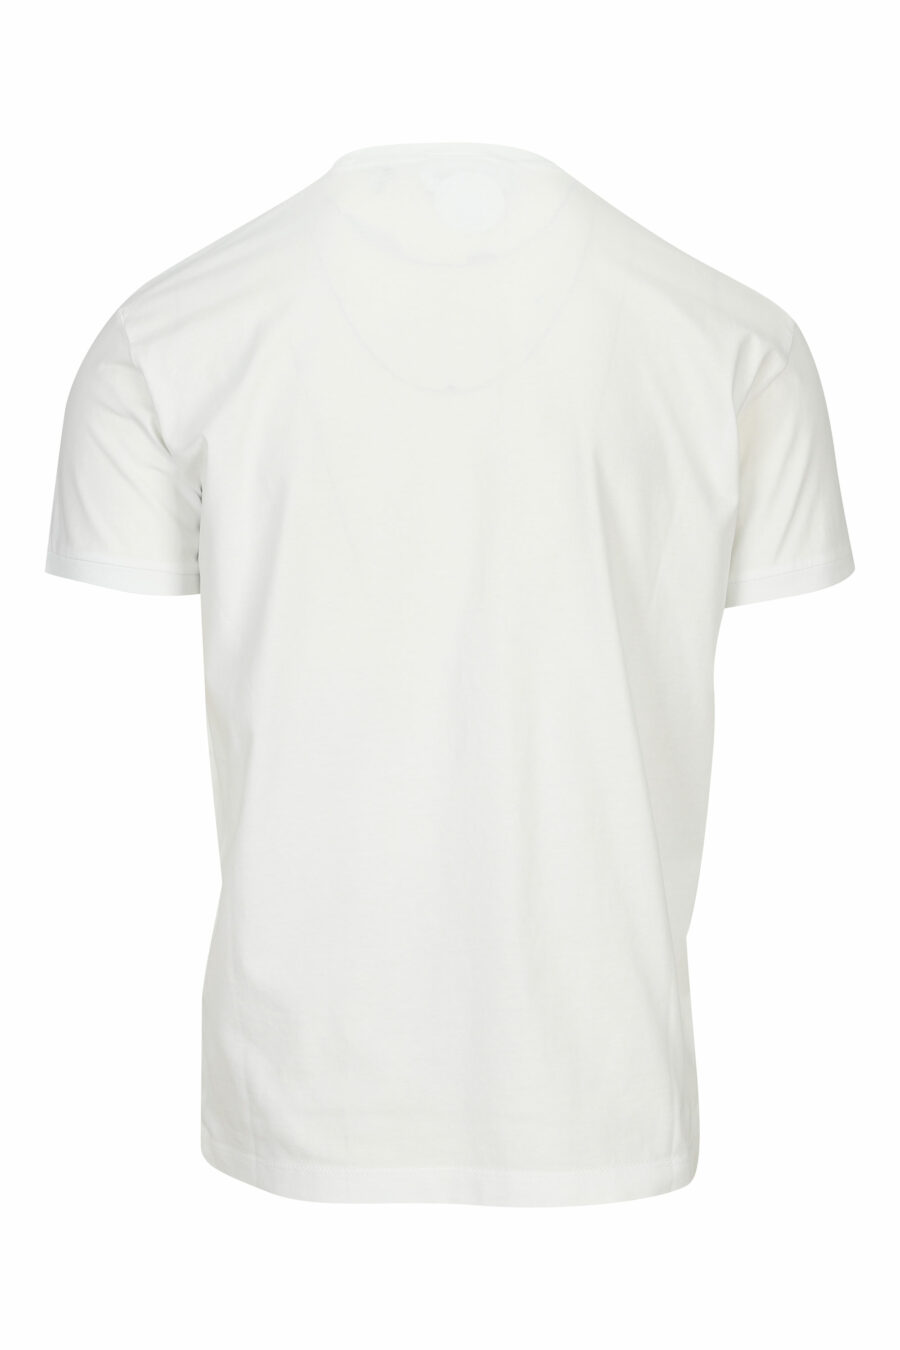 T-shirt branca com maxilogo em graffiti preto - 8054148572037 1